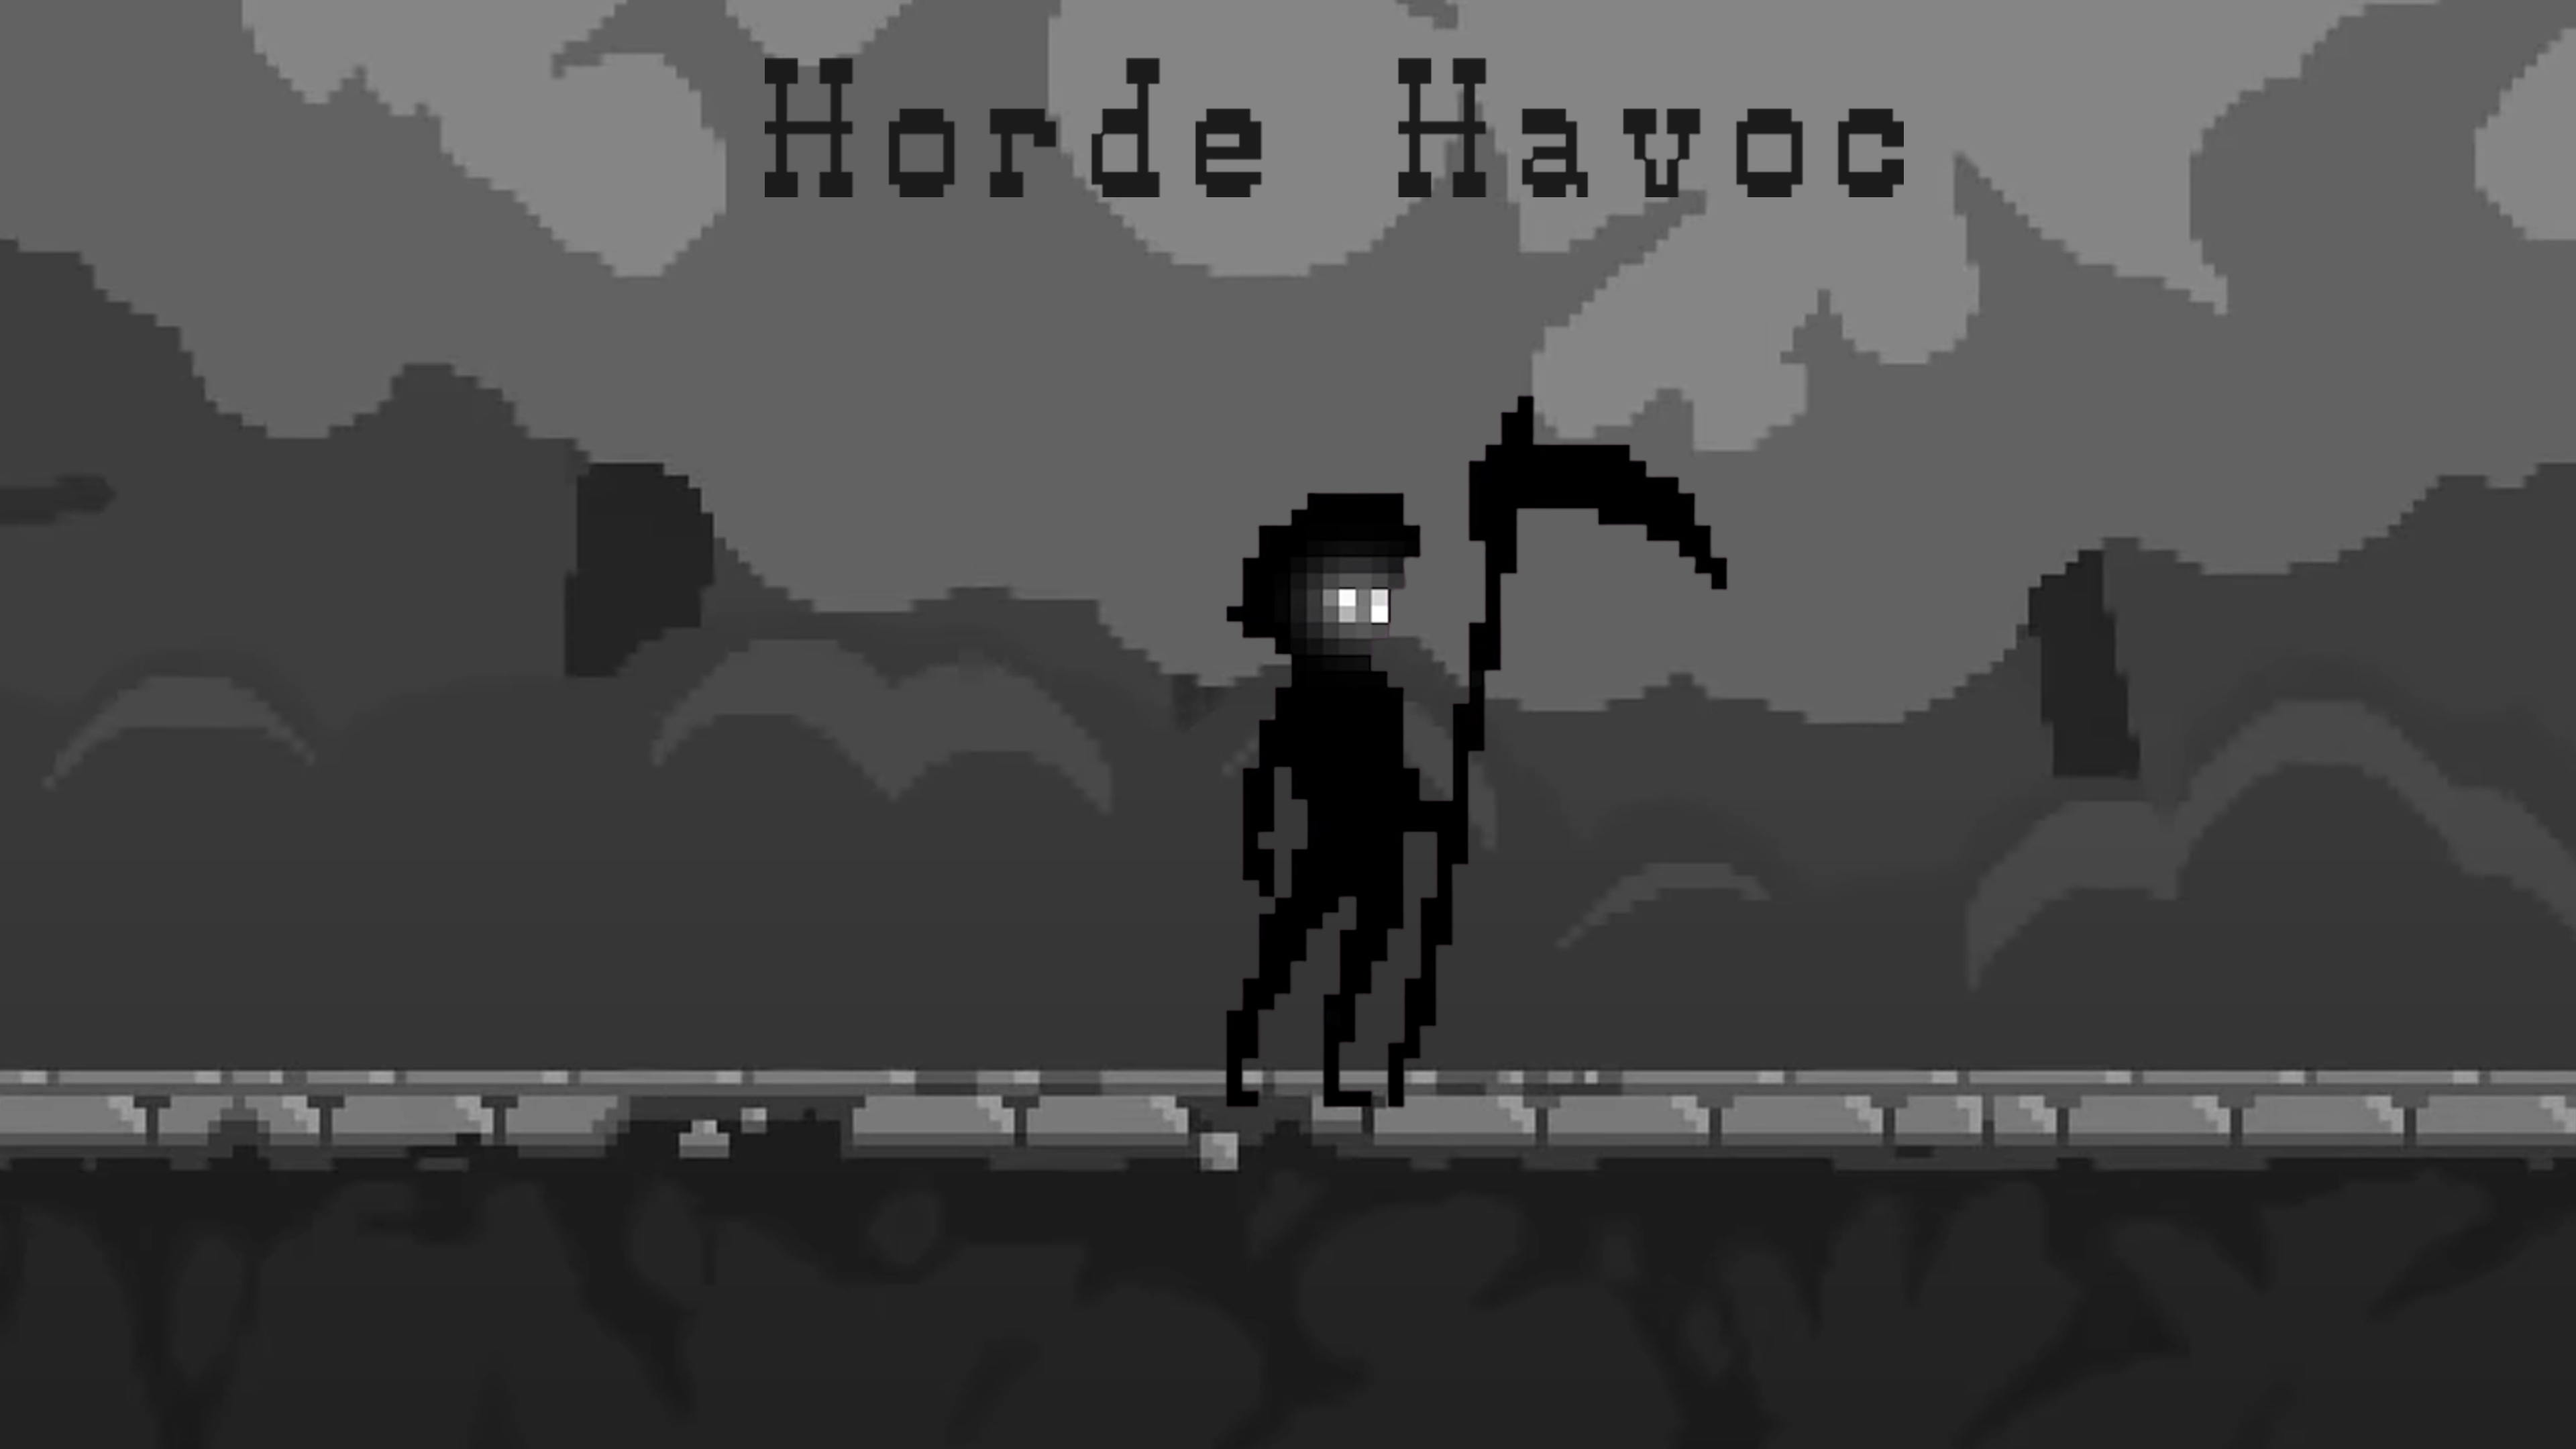 Horde Havoc